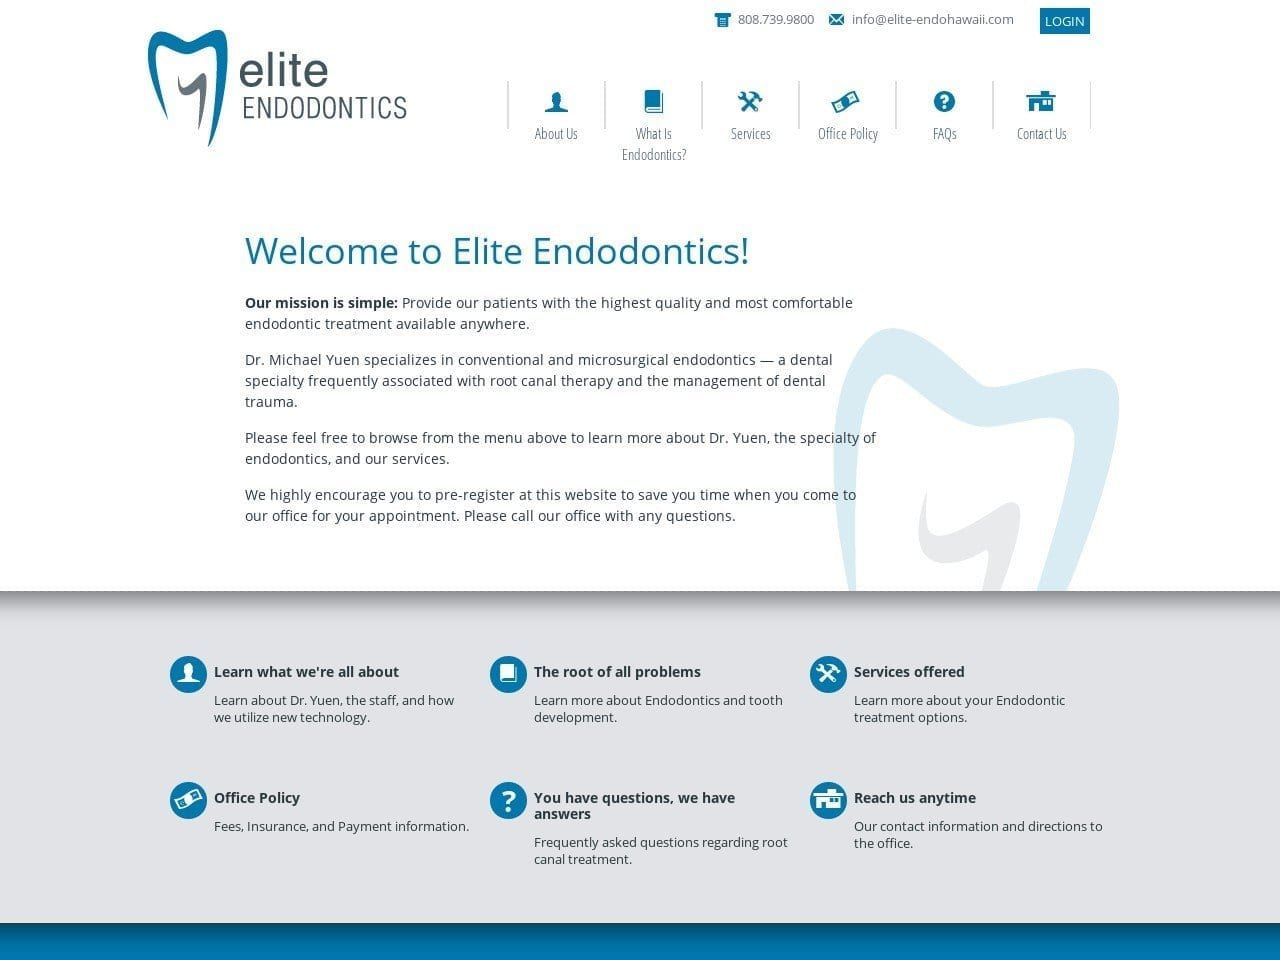 Elite Endodontics Website Screenshot from elite-endohawaii.com